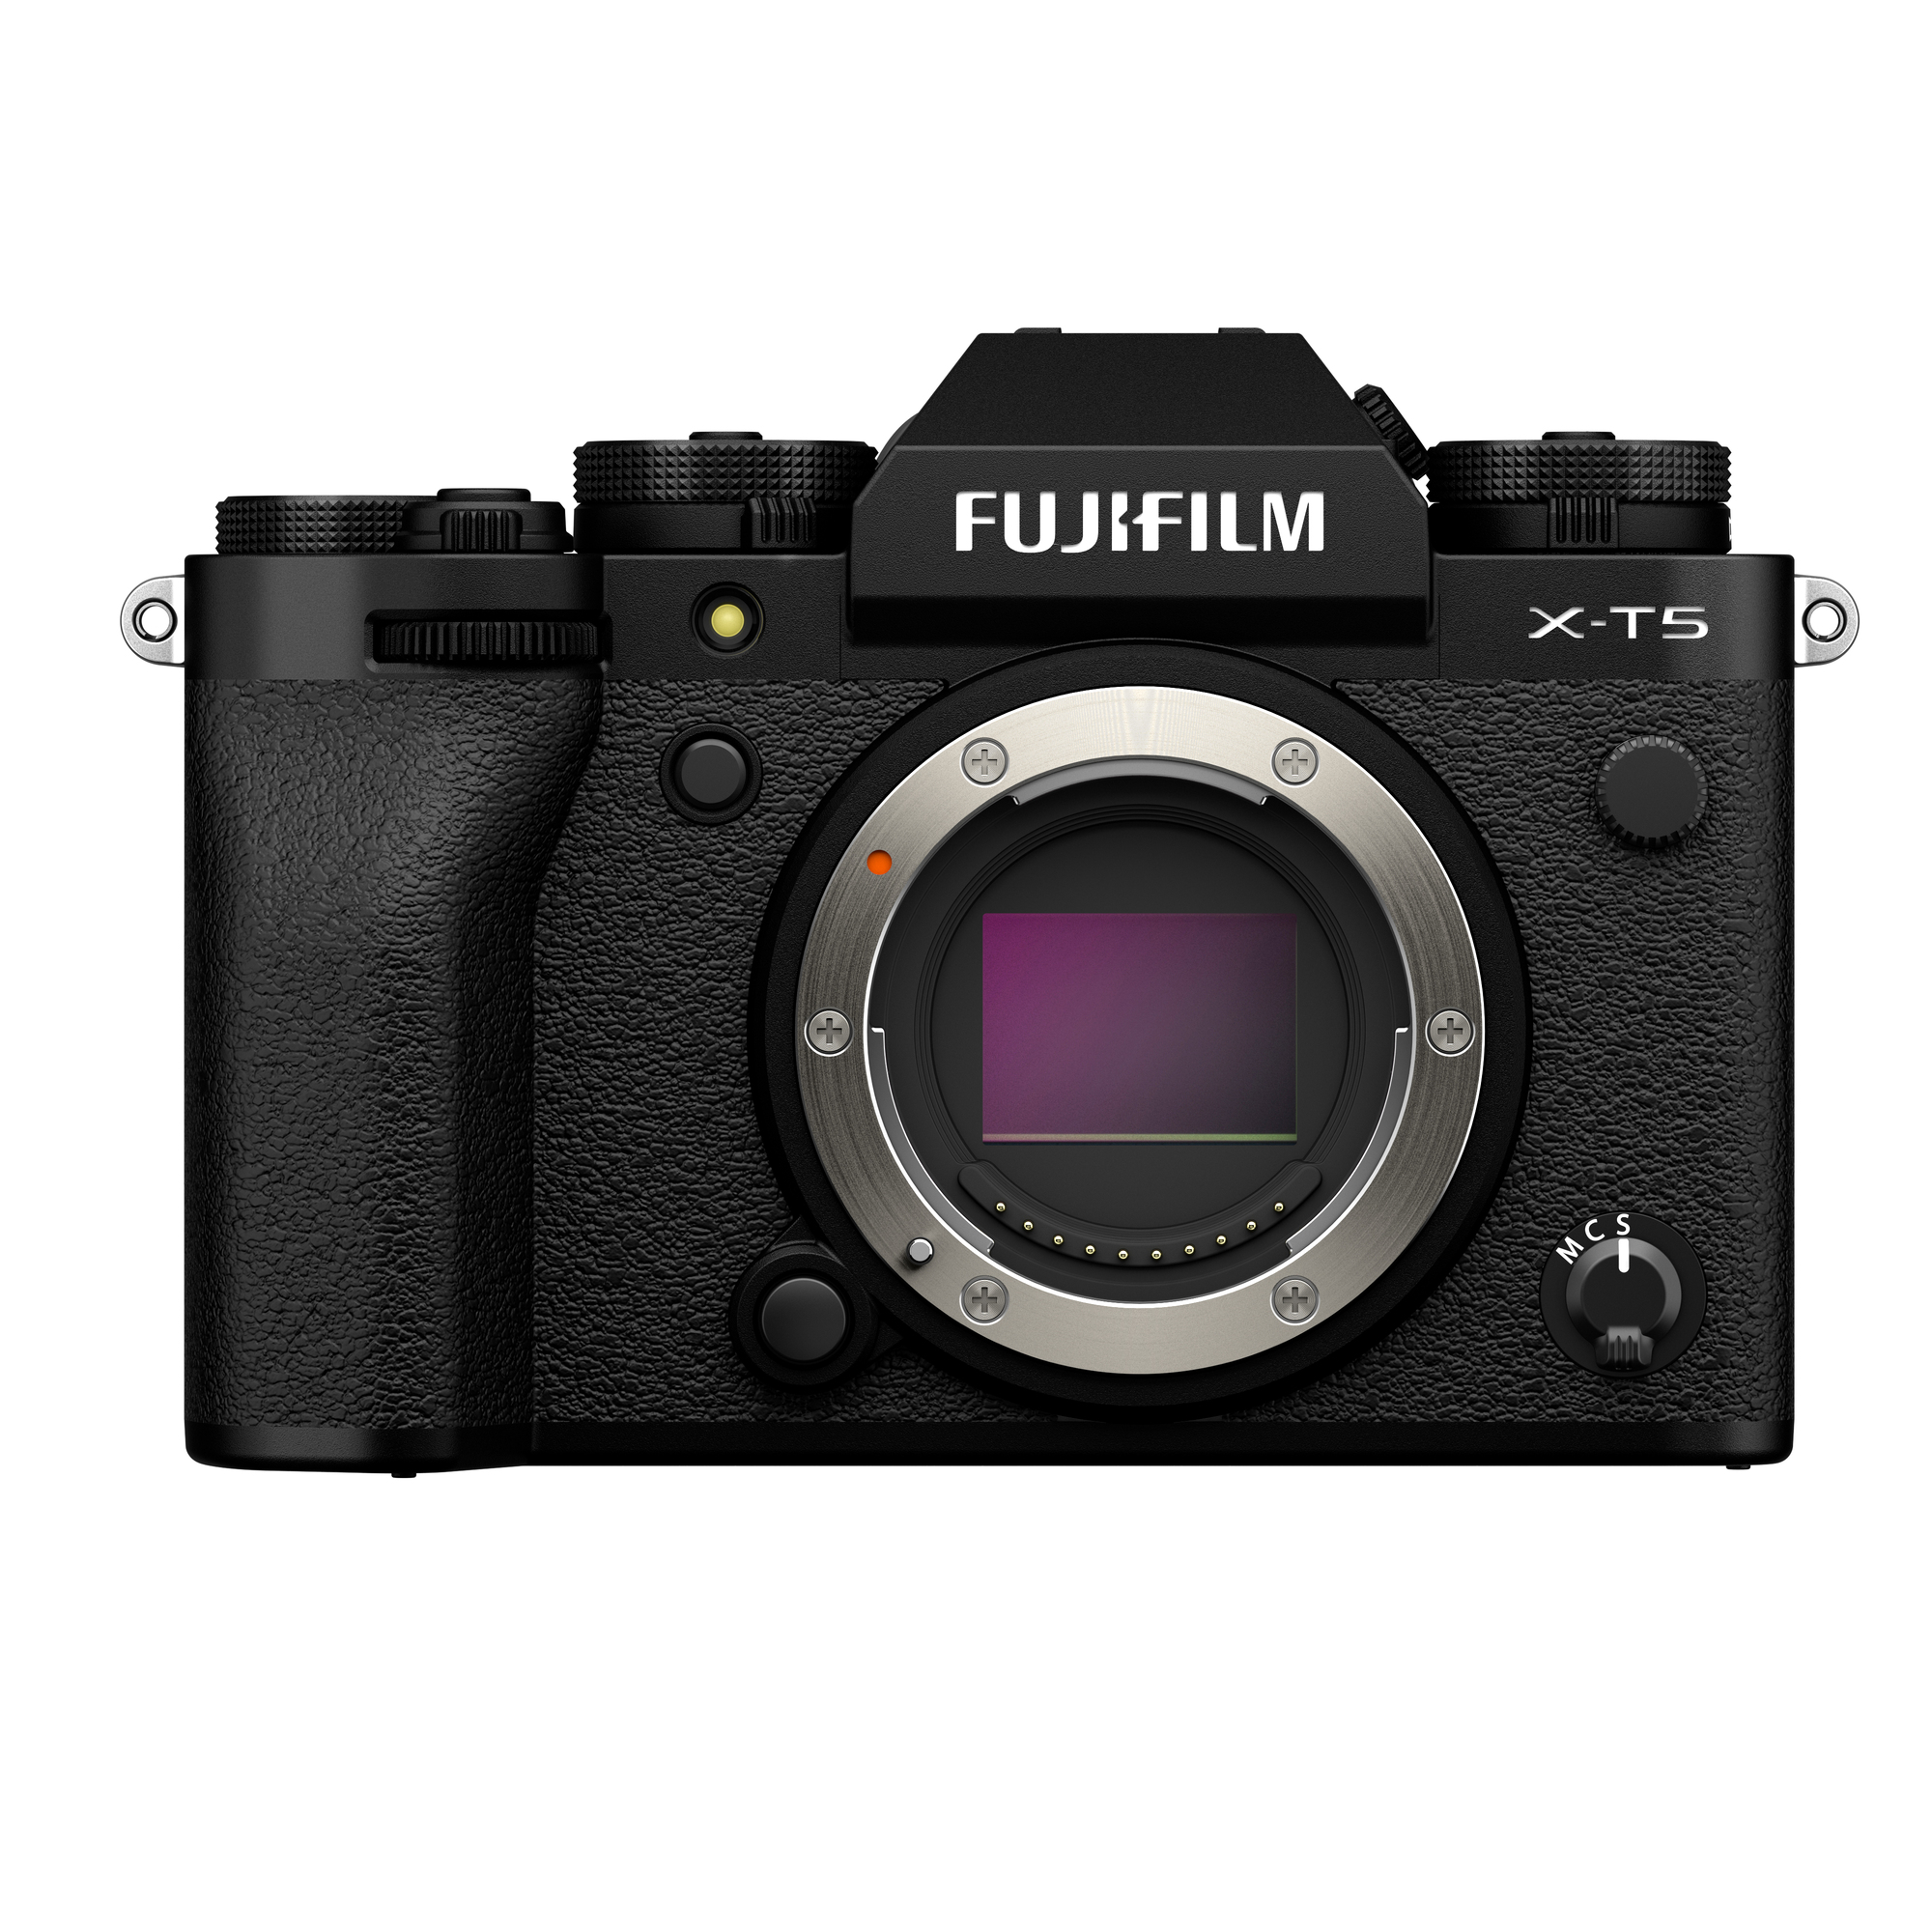 ฟูจิฟิล์ม ประเทศไทย เปิดตัวกล้อง FUJIFILM X T5 02 | FUJIFILM X-T5 | ฟูจิฟิล์มเปิดตัวกล้อง FUJIFILM X-T5 และเลนส์ Fujinon XF30mm F2.8 Macro